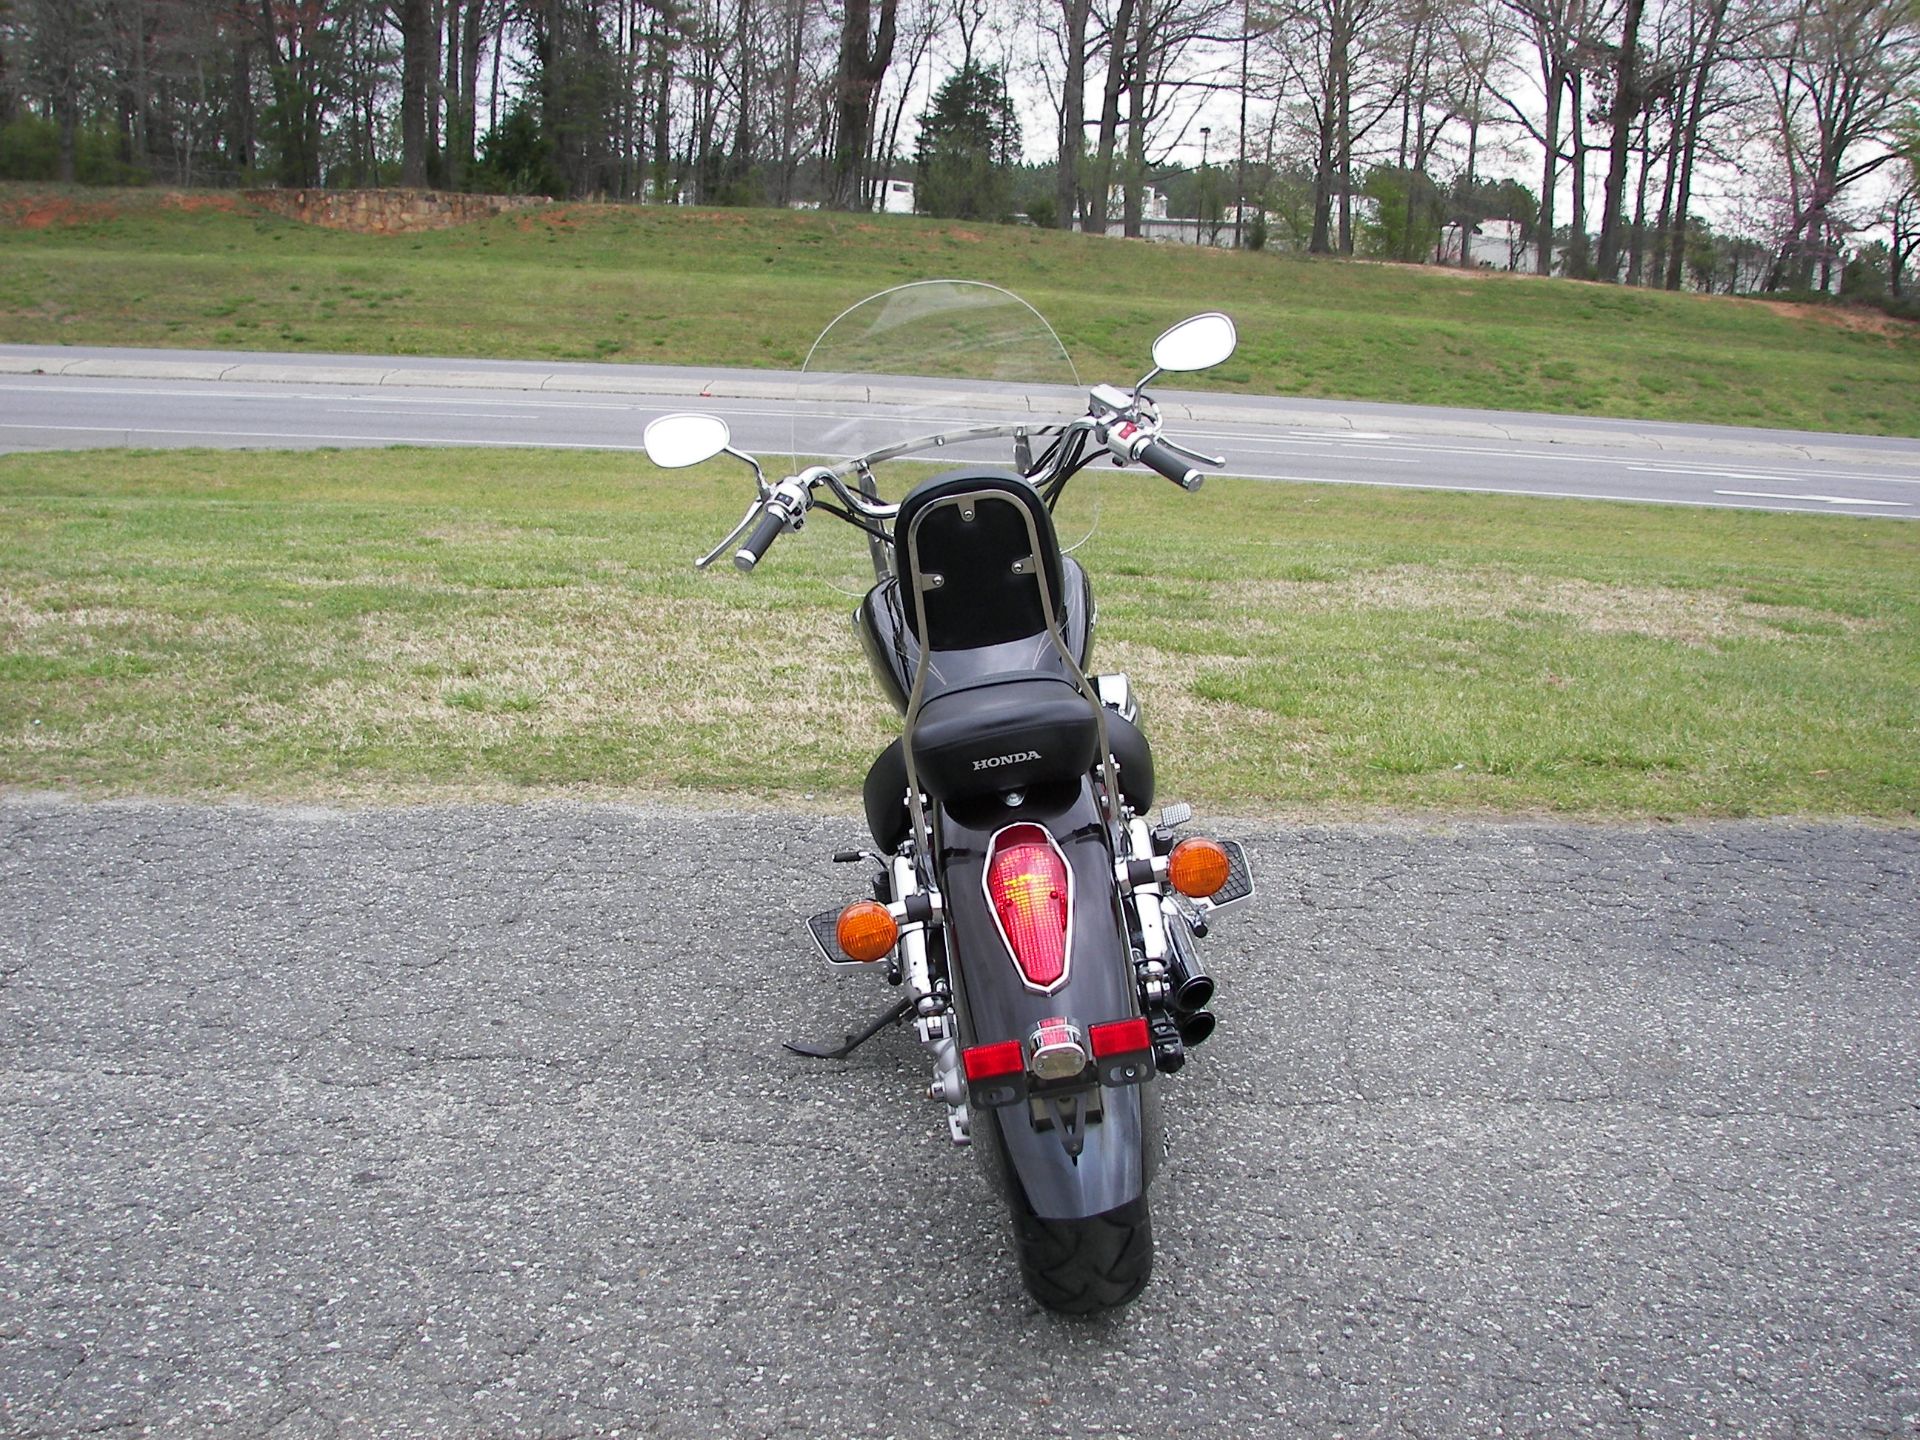 2009 Honda Shadow Aero® in Shelby, North Carolina - Photo 6